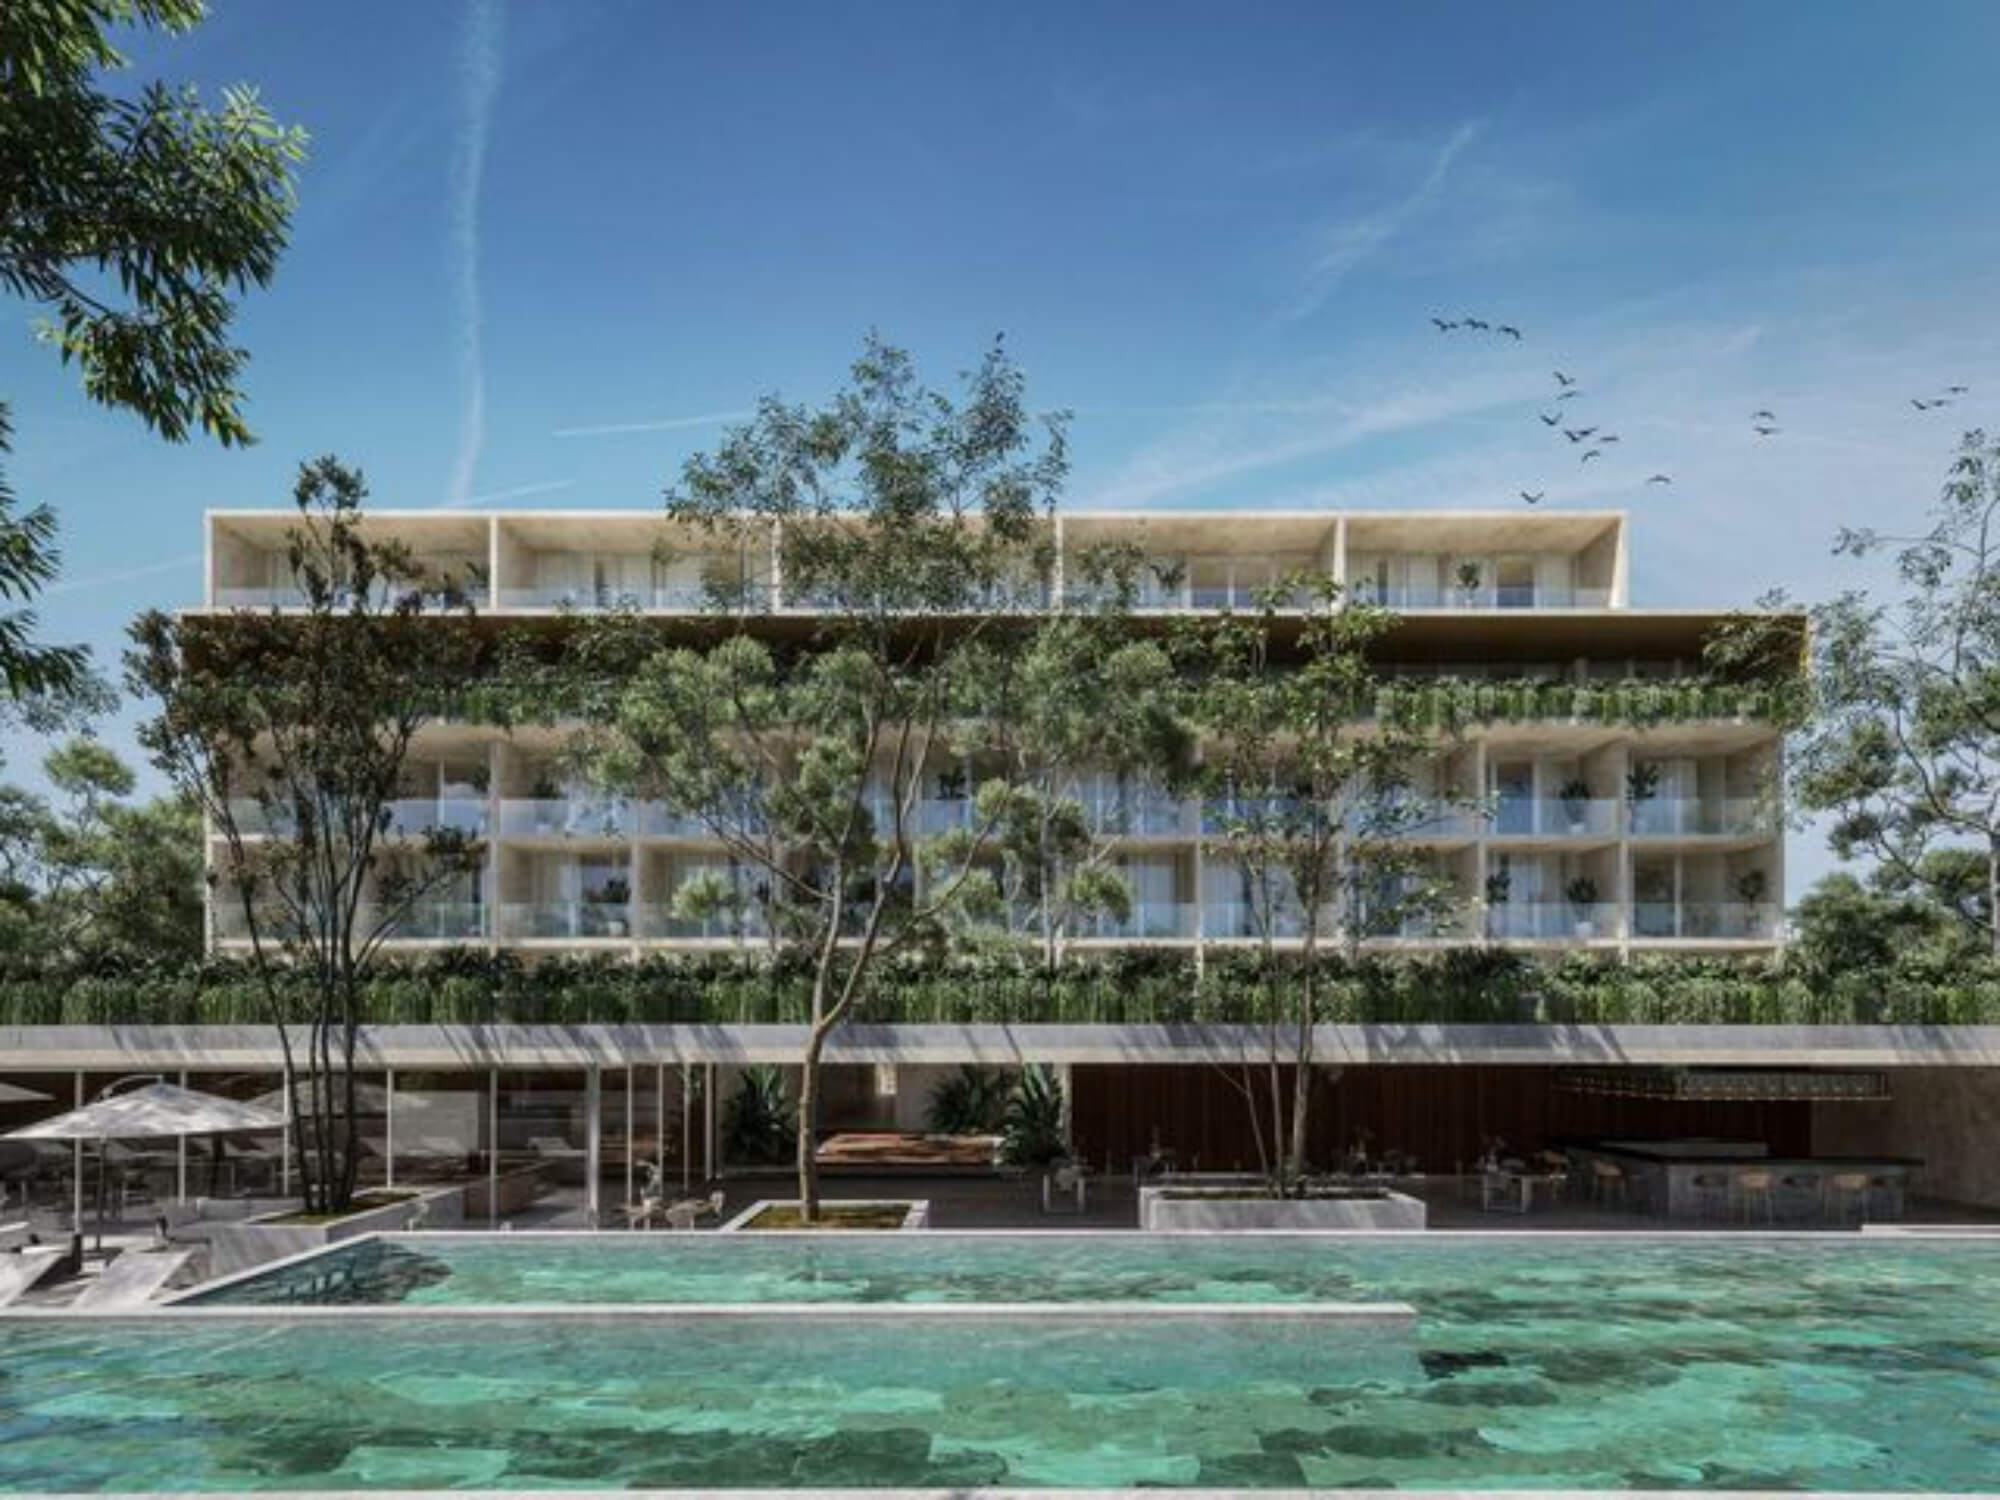 Condominium with private garden and terrace for sale in Merida Centro.